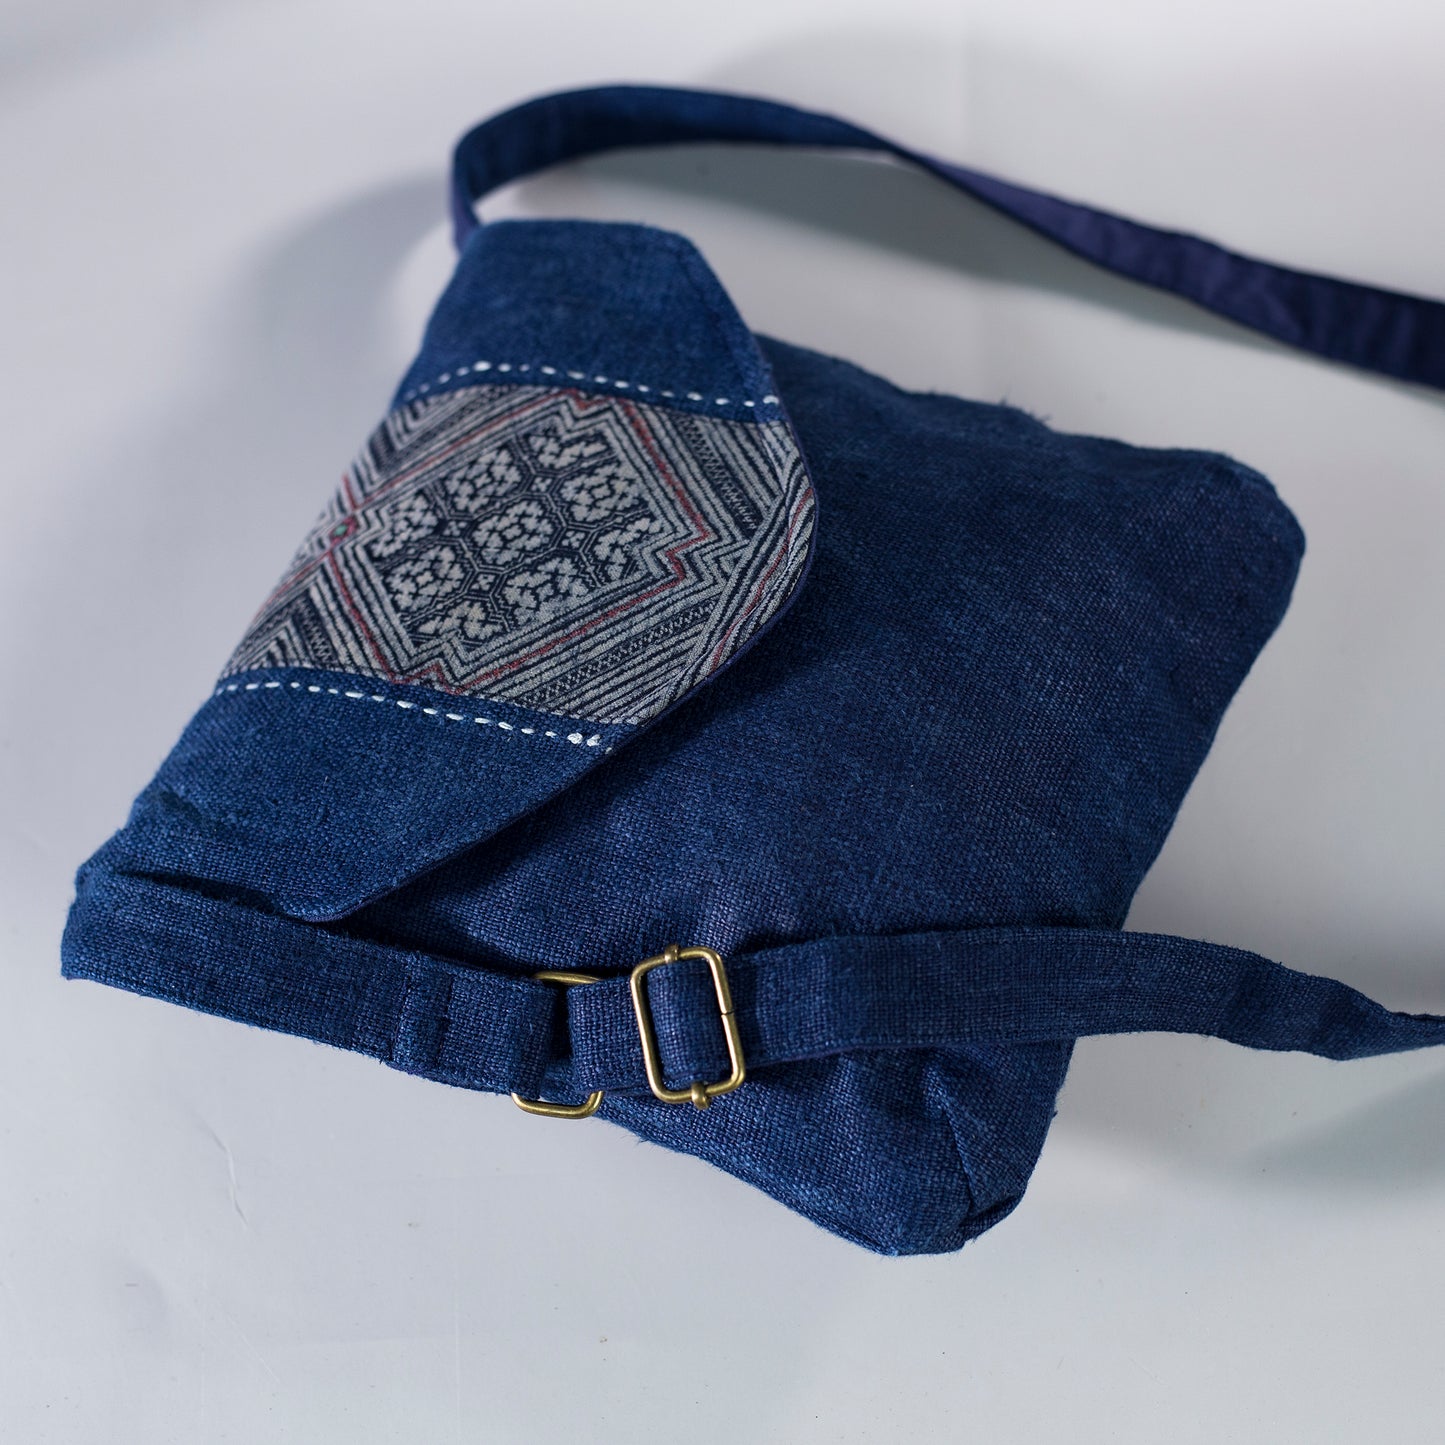 Purity Collection: Cross-body väska, naturlig hampa i BLÅTT, vintage patch